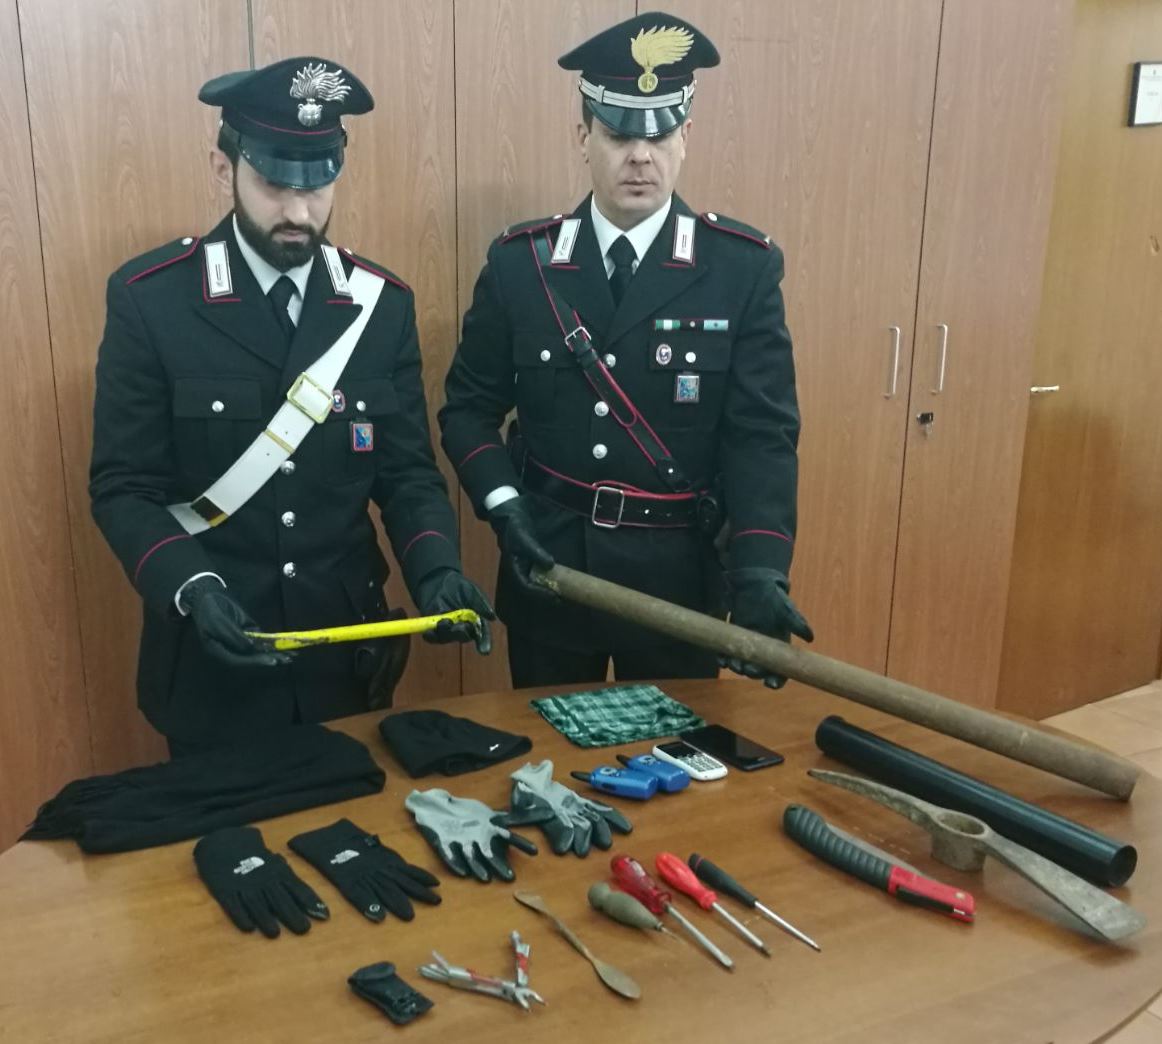 Appia antica, beccati con il kit per il furto perfetto: arrestati due italiani